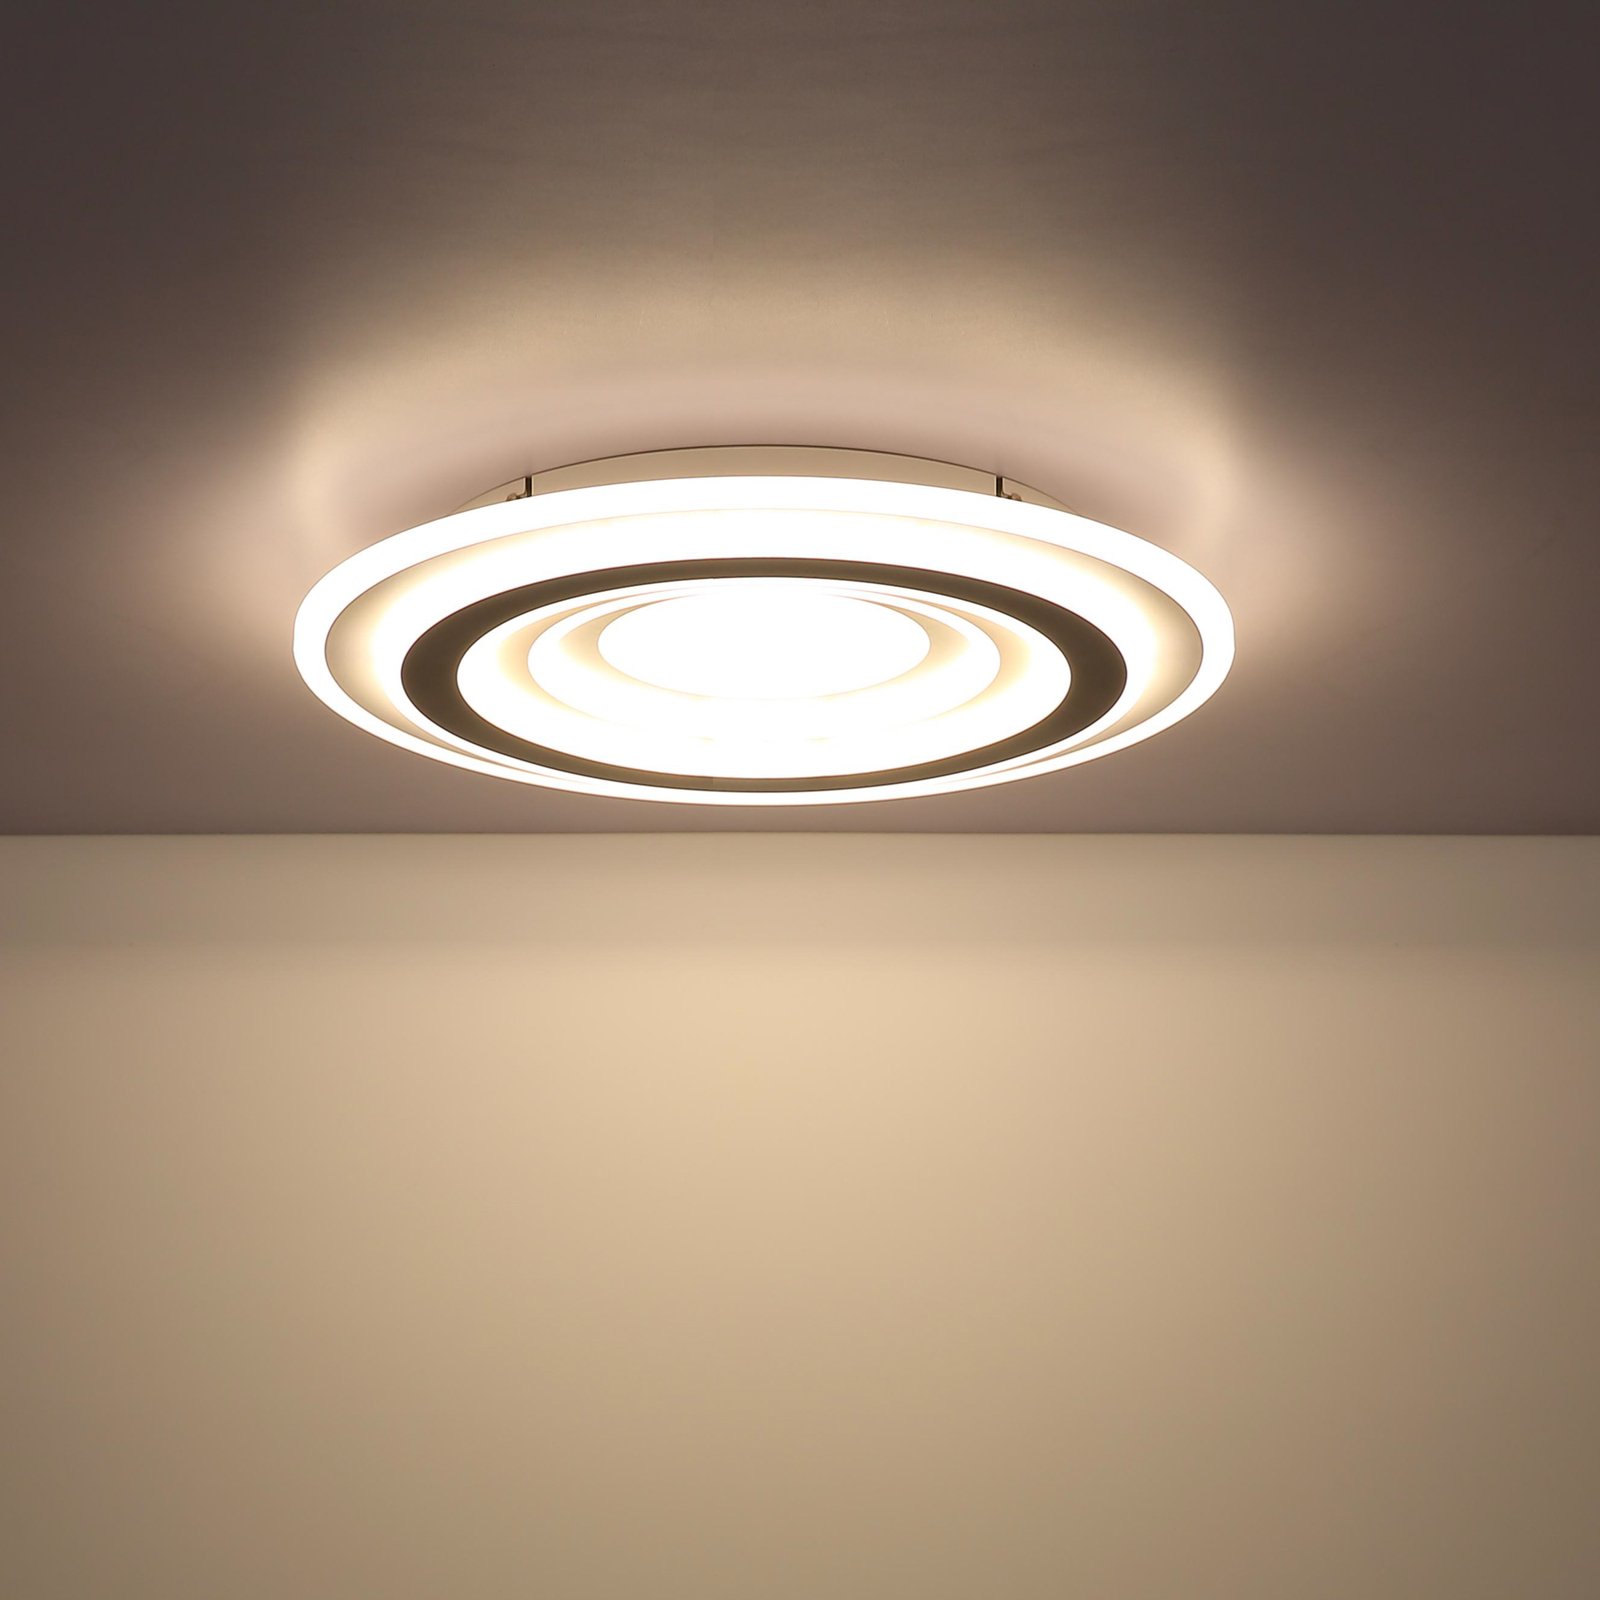 Stropní svítidlo Sabatino LED, bílá/antracitová, Ø 48 cm, CCT